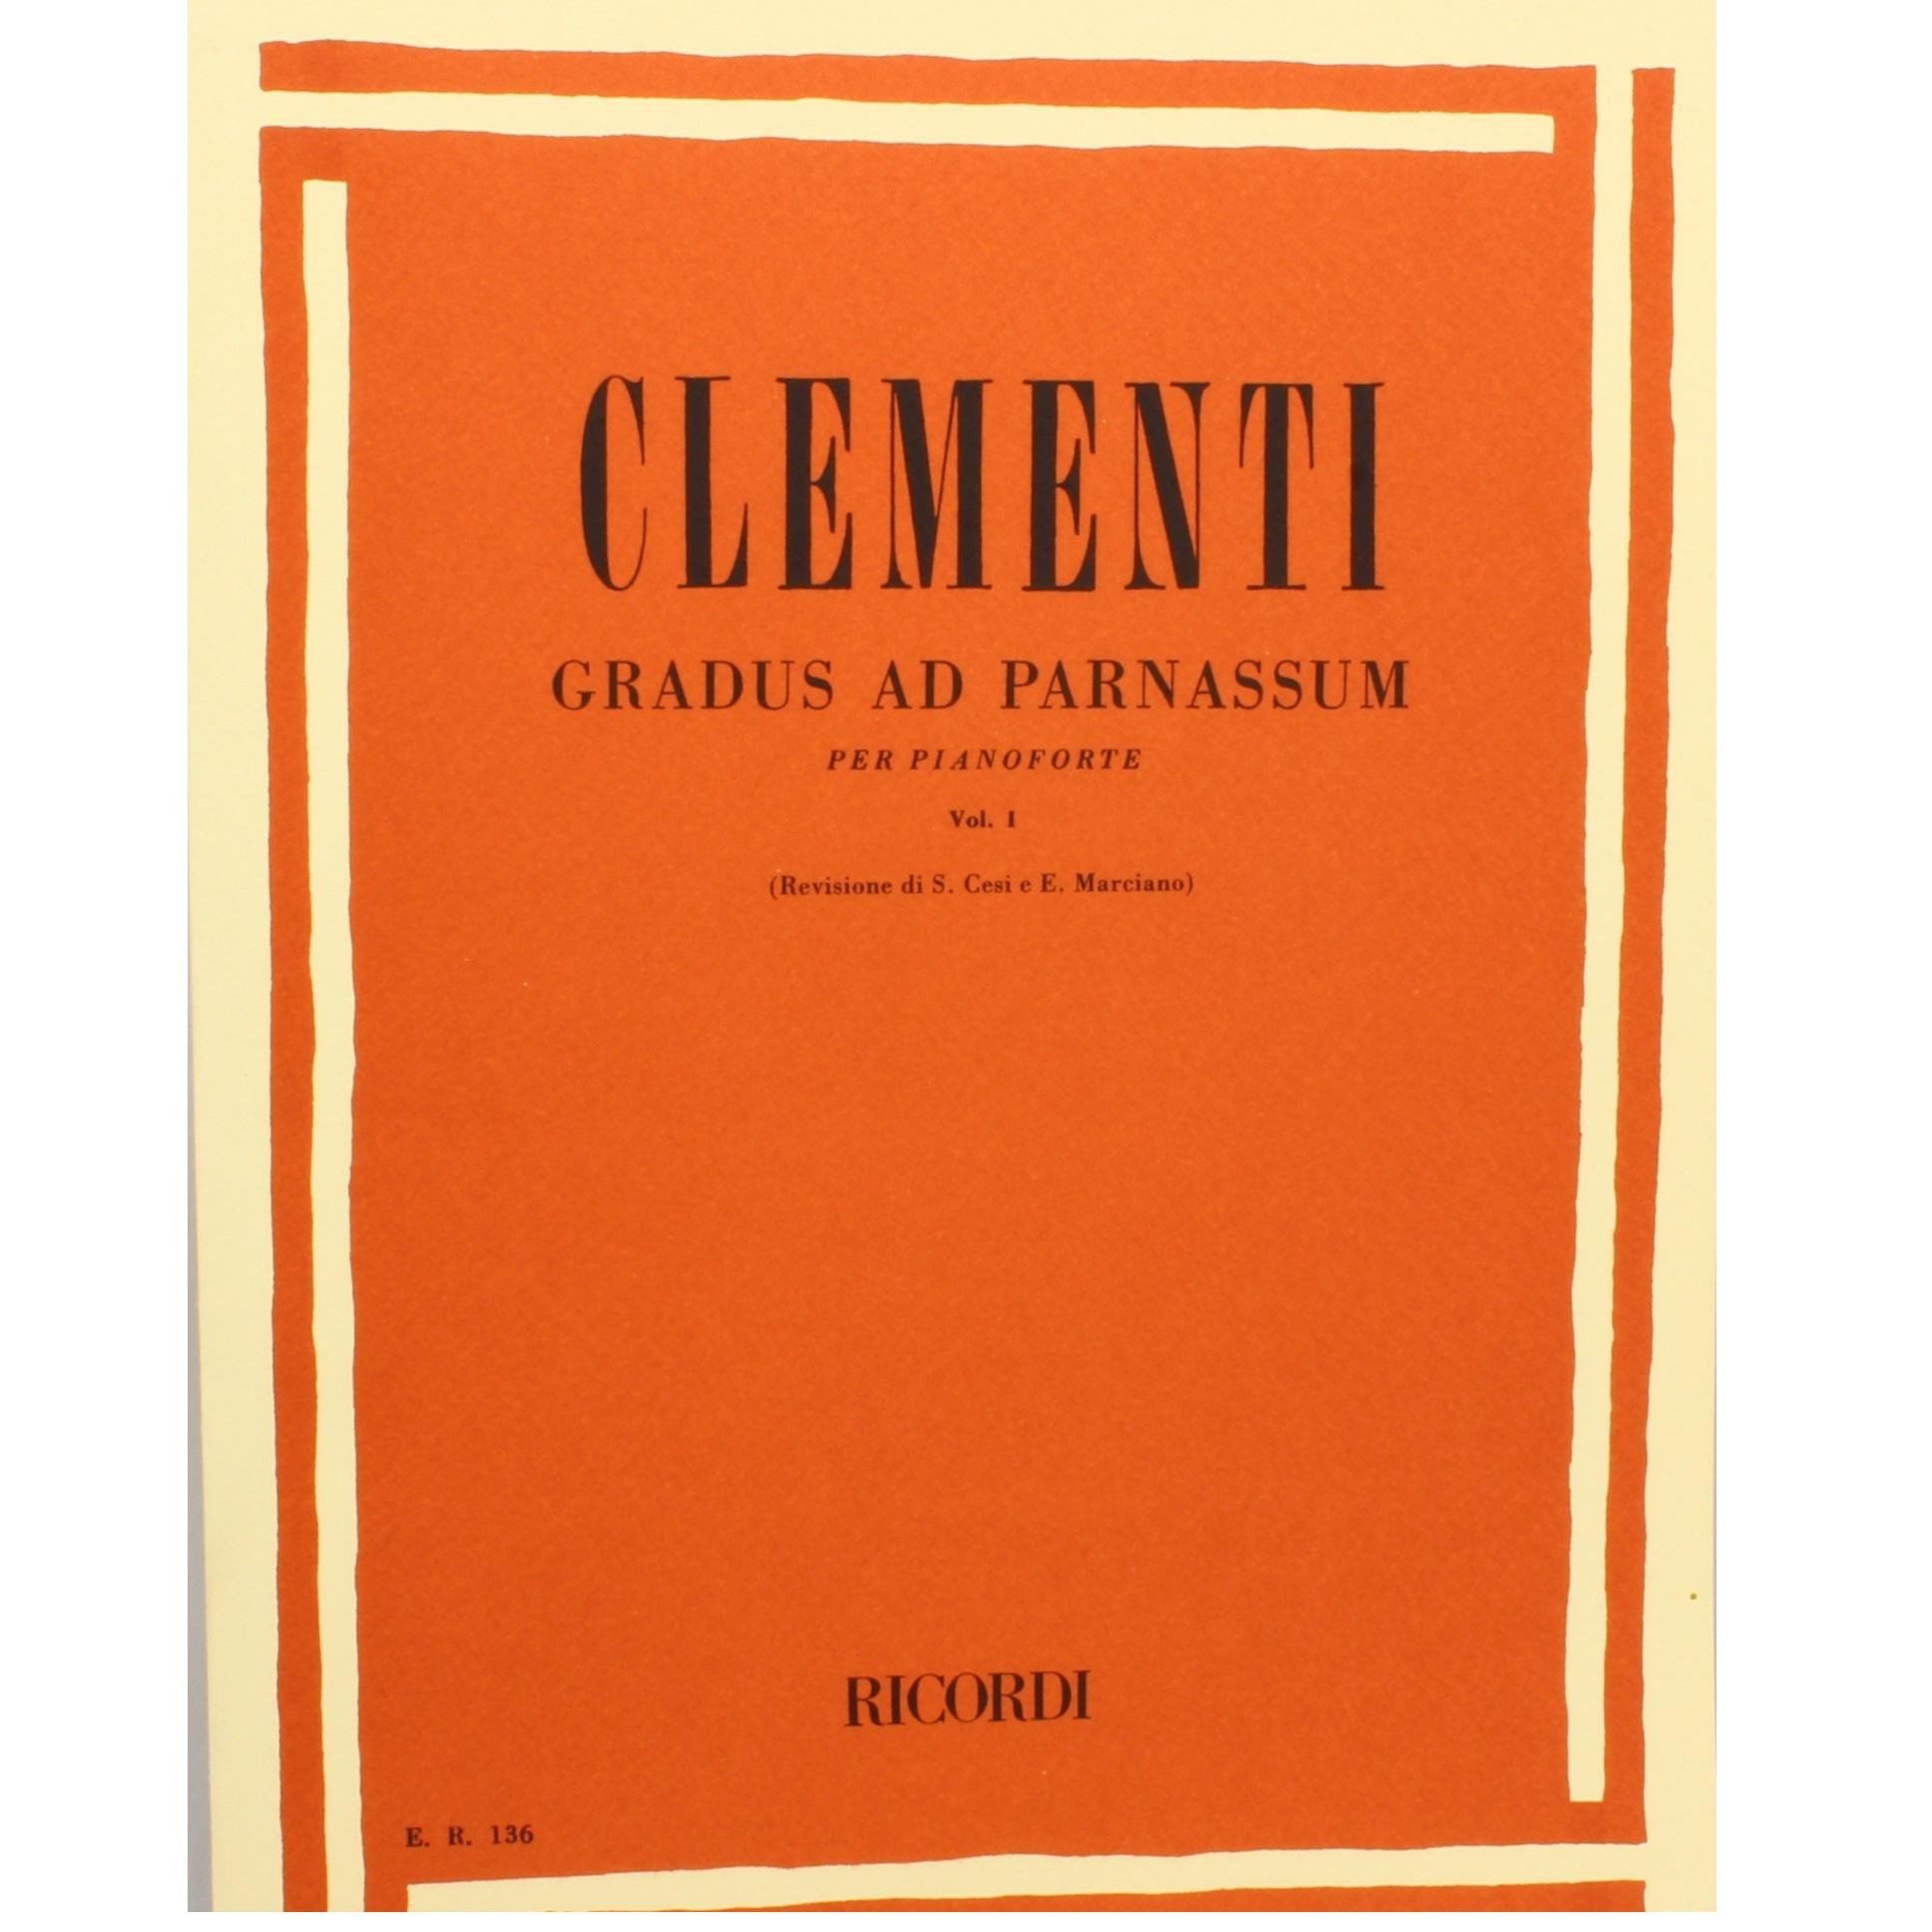 Clementi gradus ad parnassum per pianoforte Vol.1 (Cesi e Marciano) - Ricordi